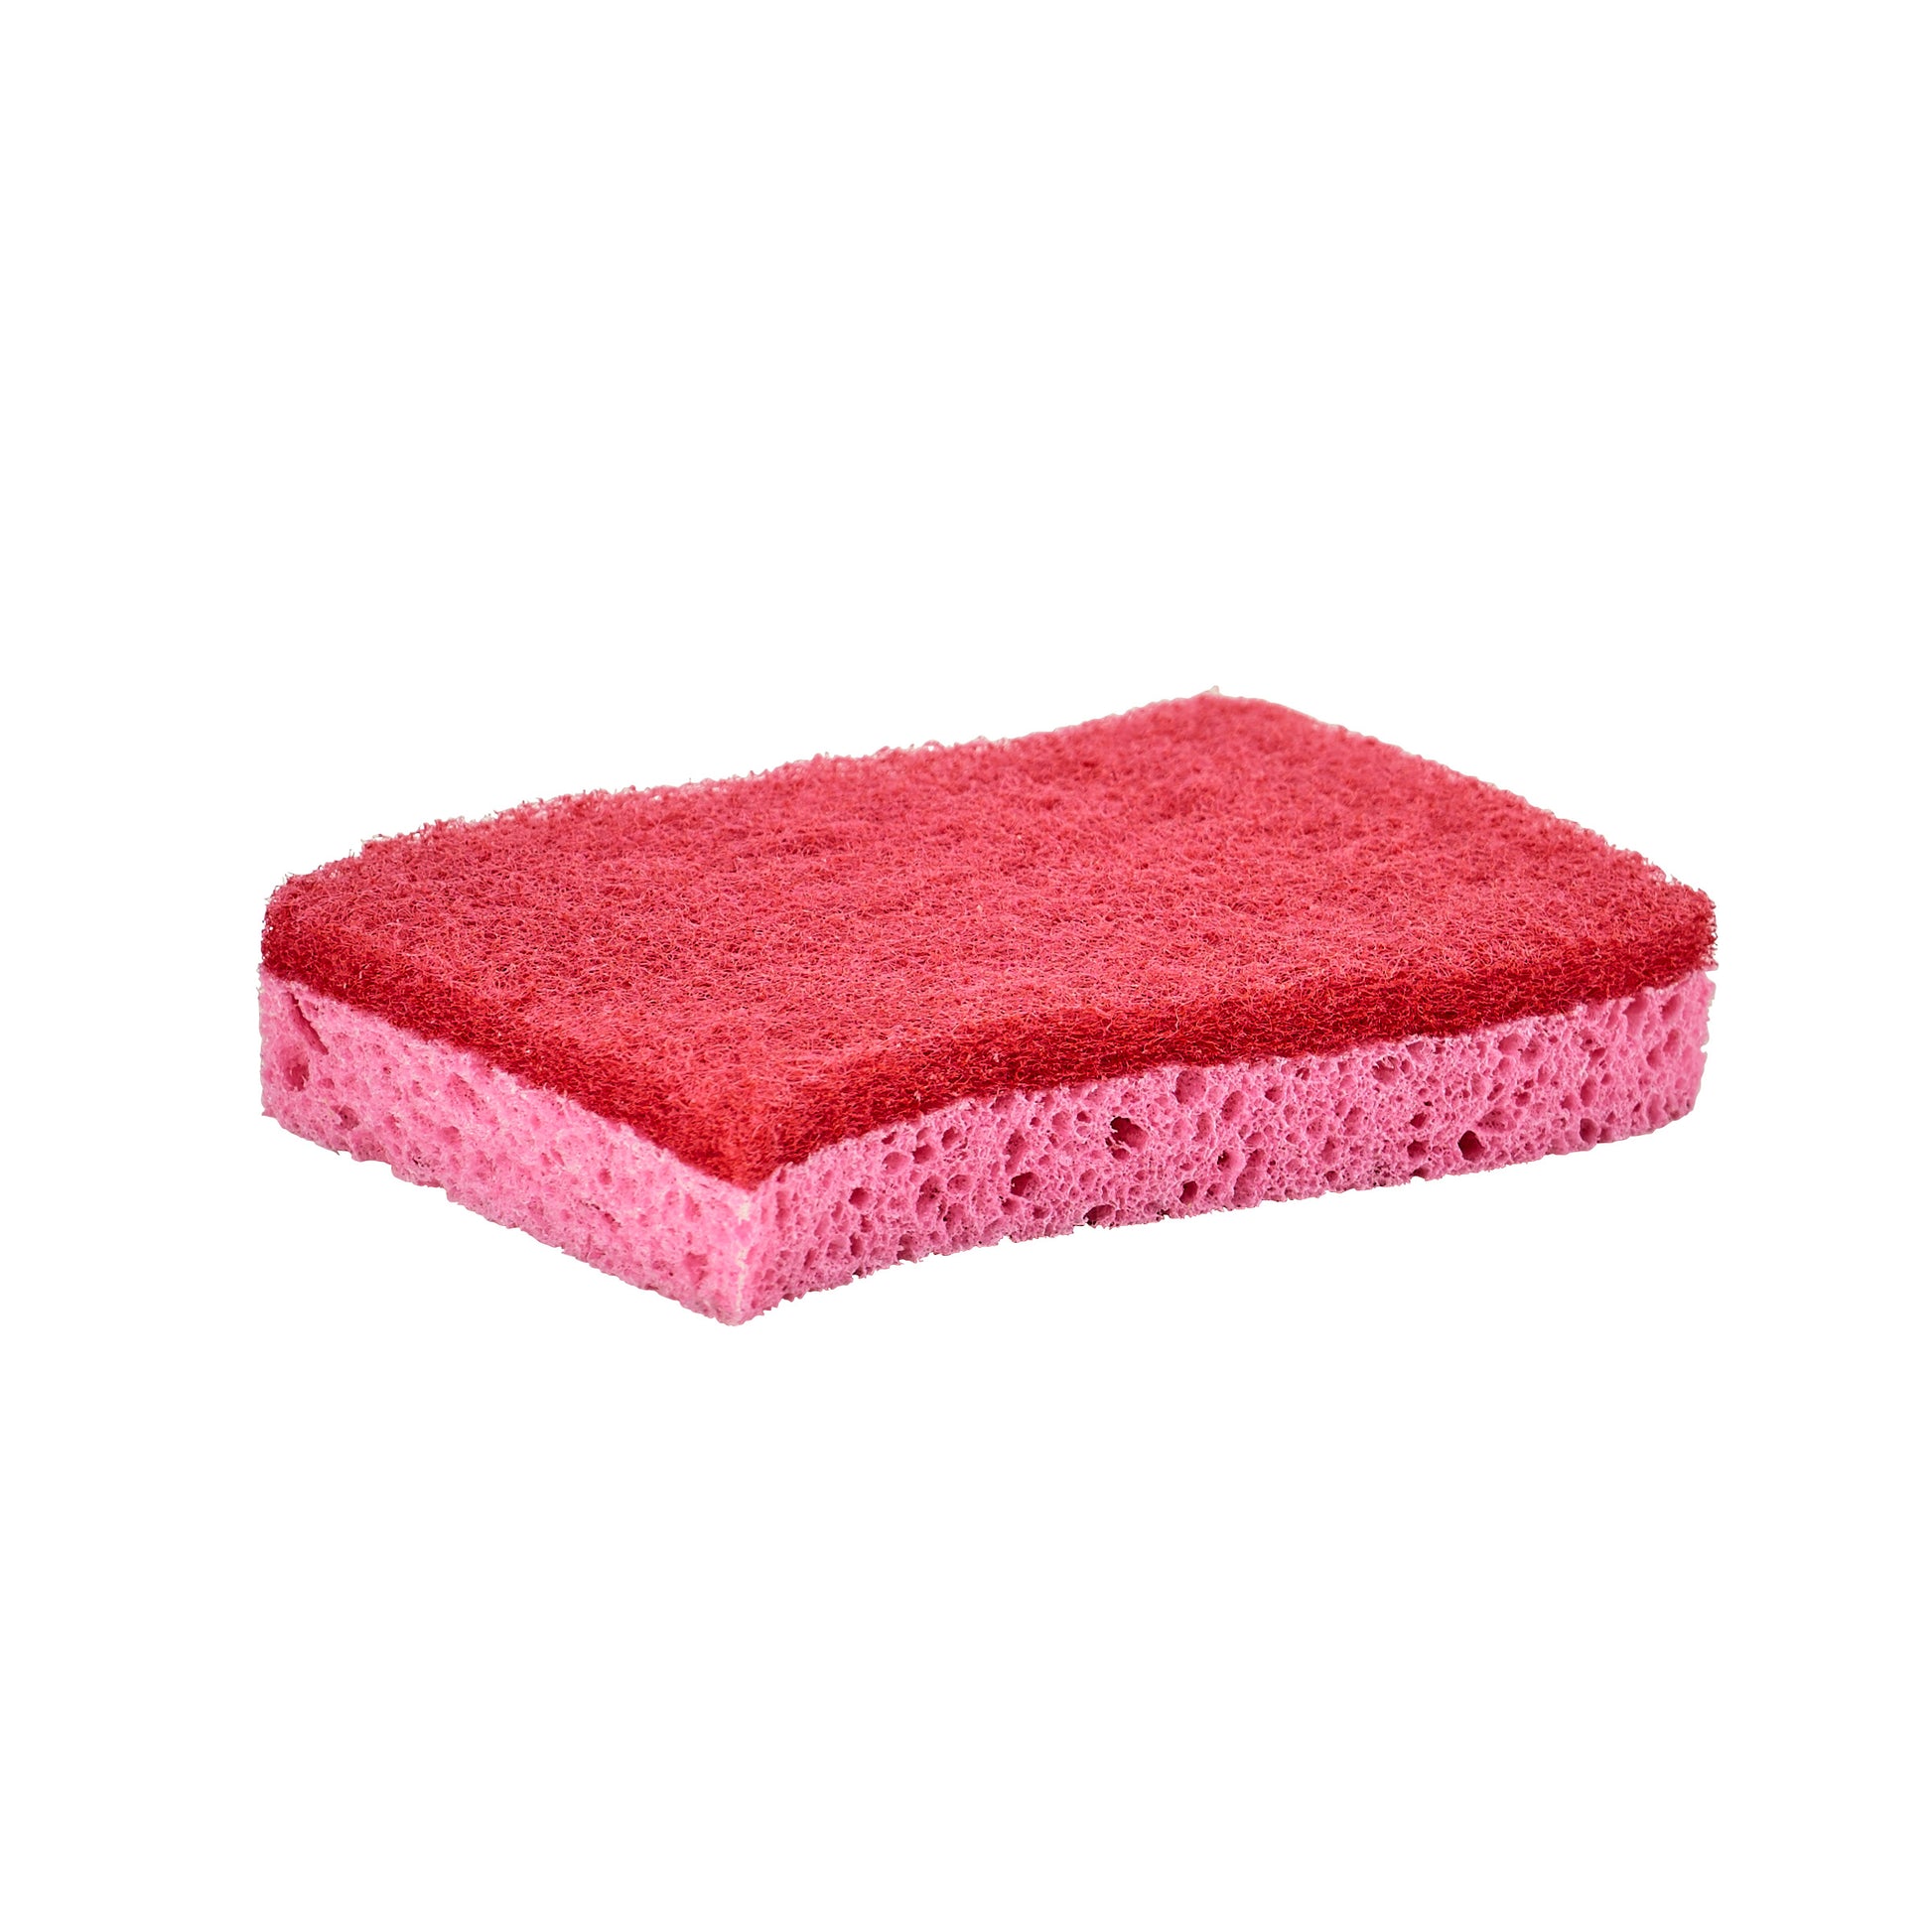 Wholesale Non-Scratch Scrub Sponge